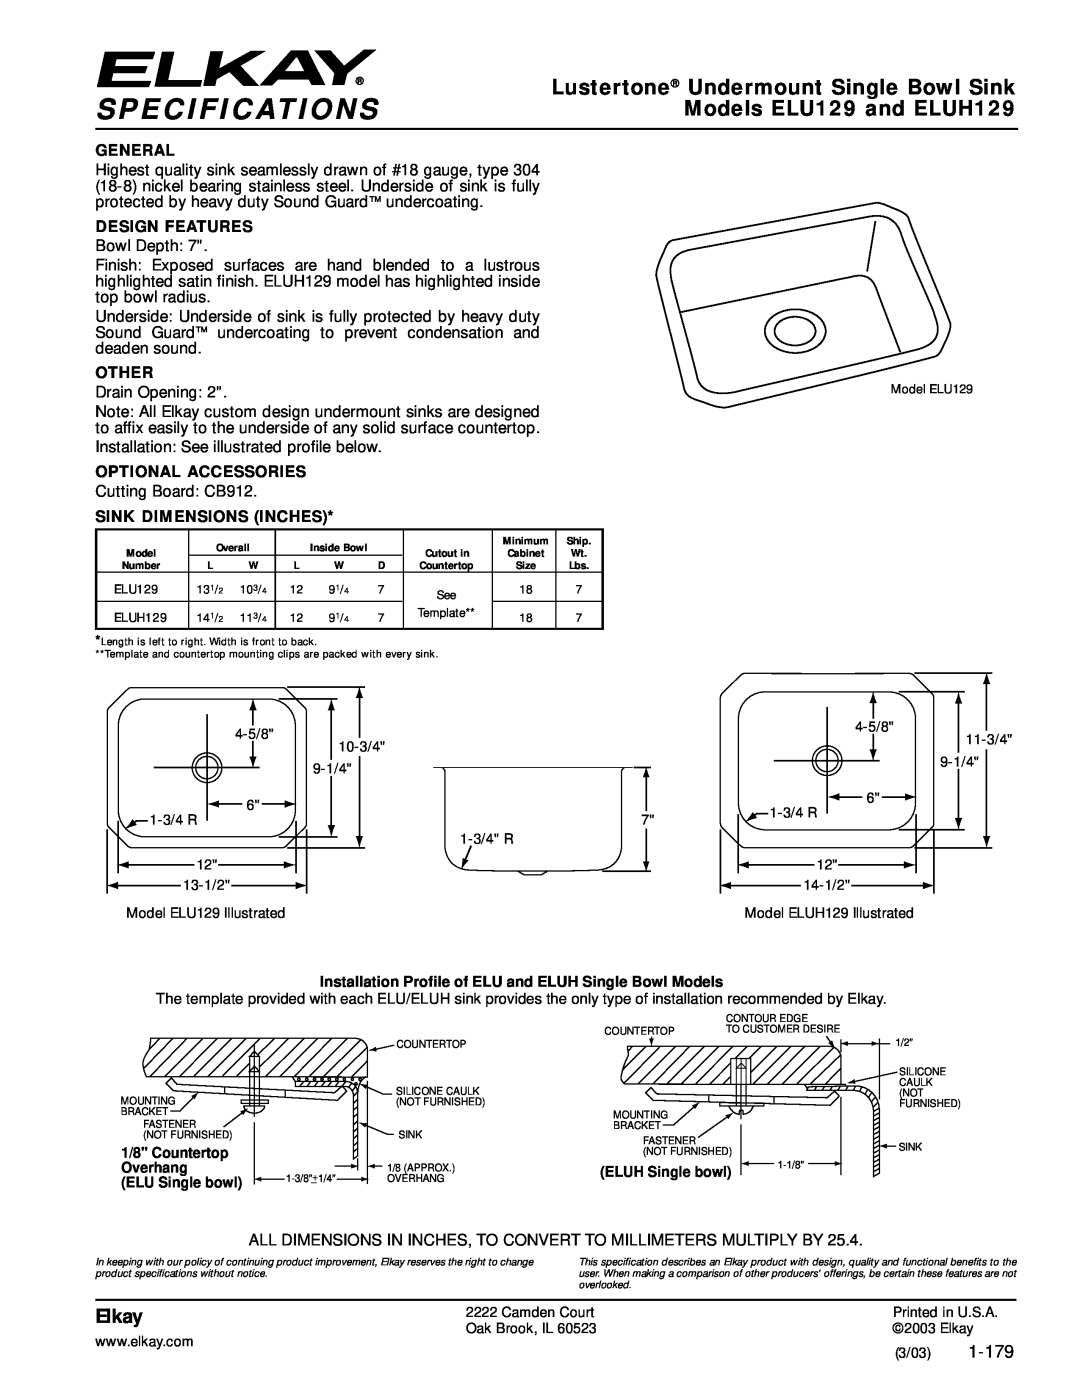 Elkay specifications Specifications, Lustertone Undermount Single Bowl Sink, Models ELU129 and ELUH129, Elkay, 1-179 